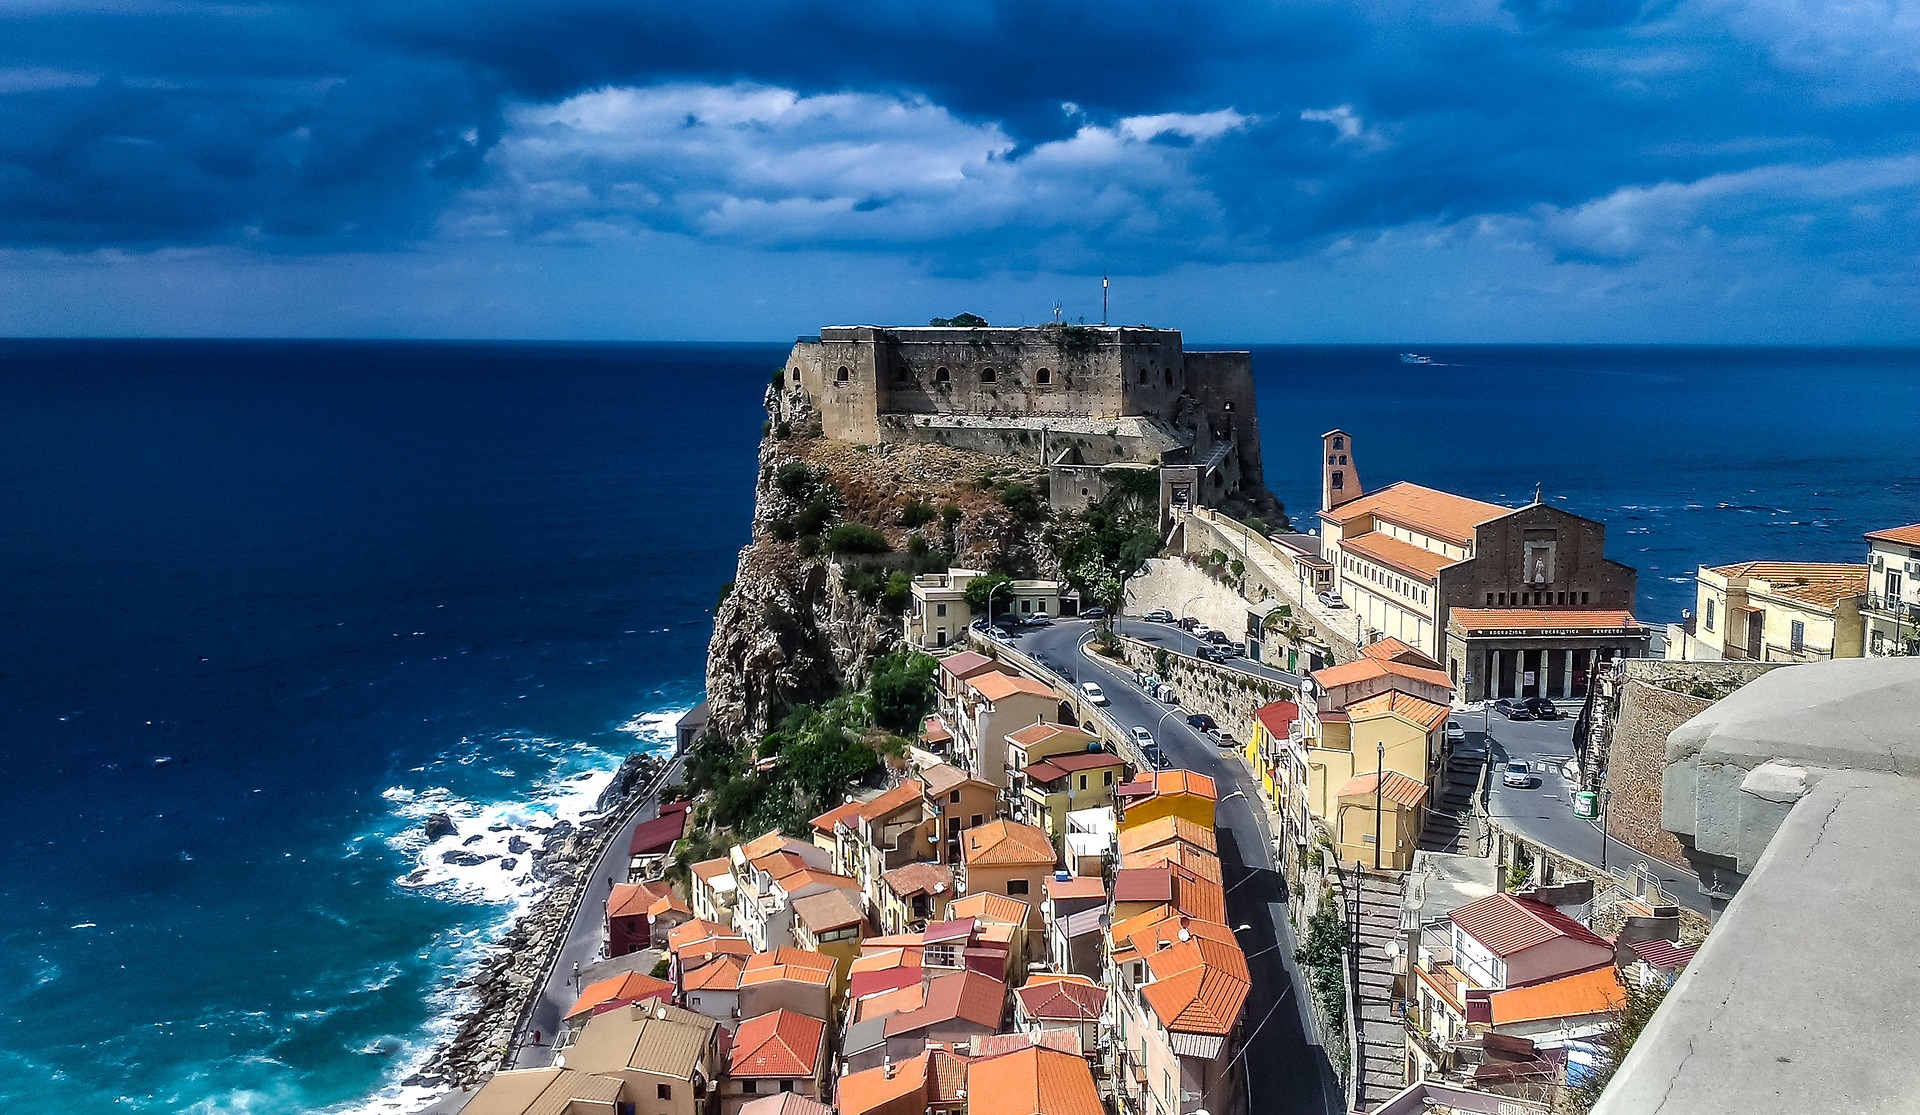 Calabria Tropea - image by Walkerssk @ pixabay.com